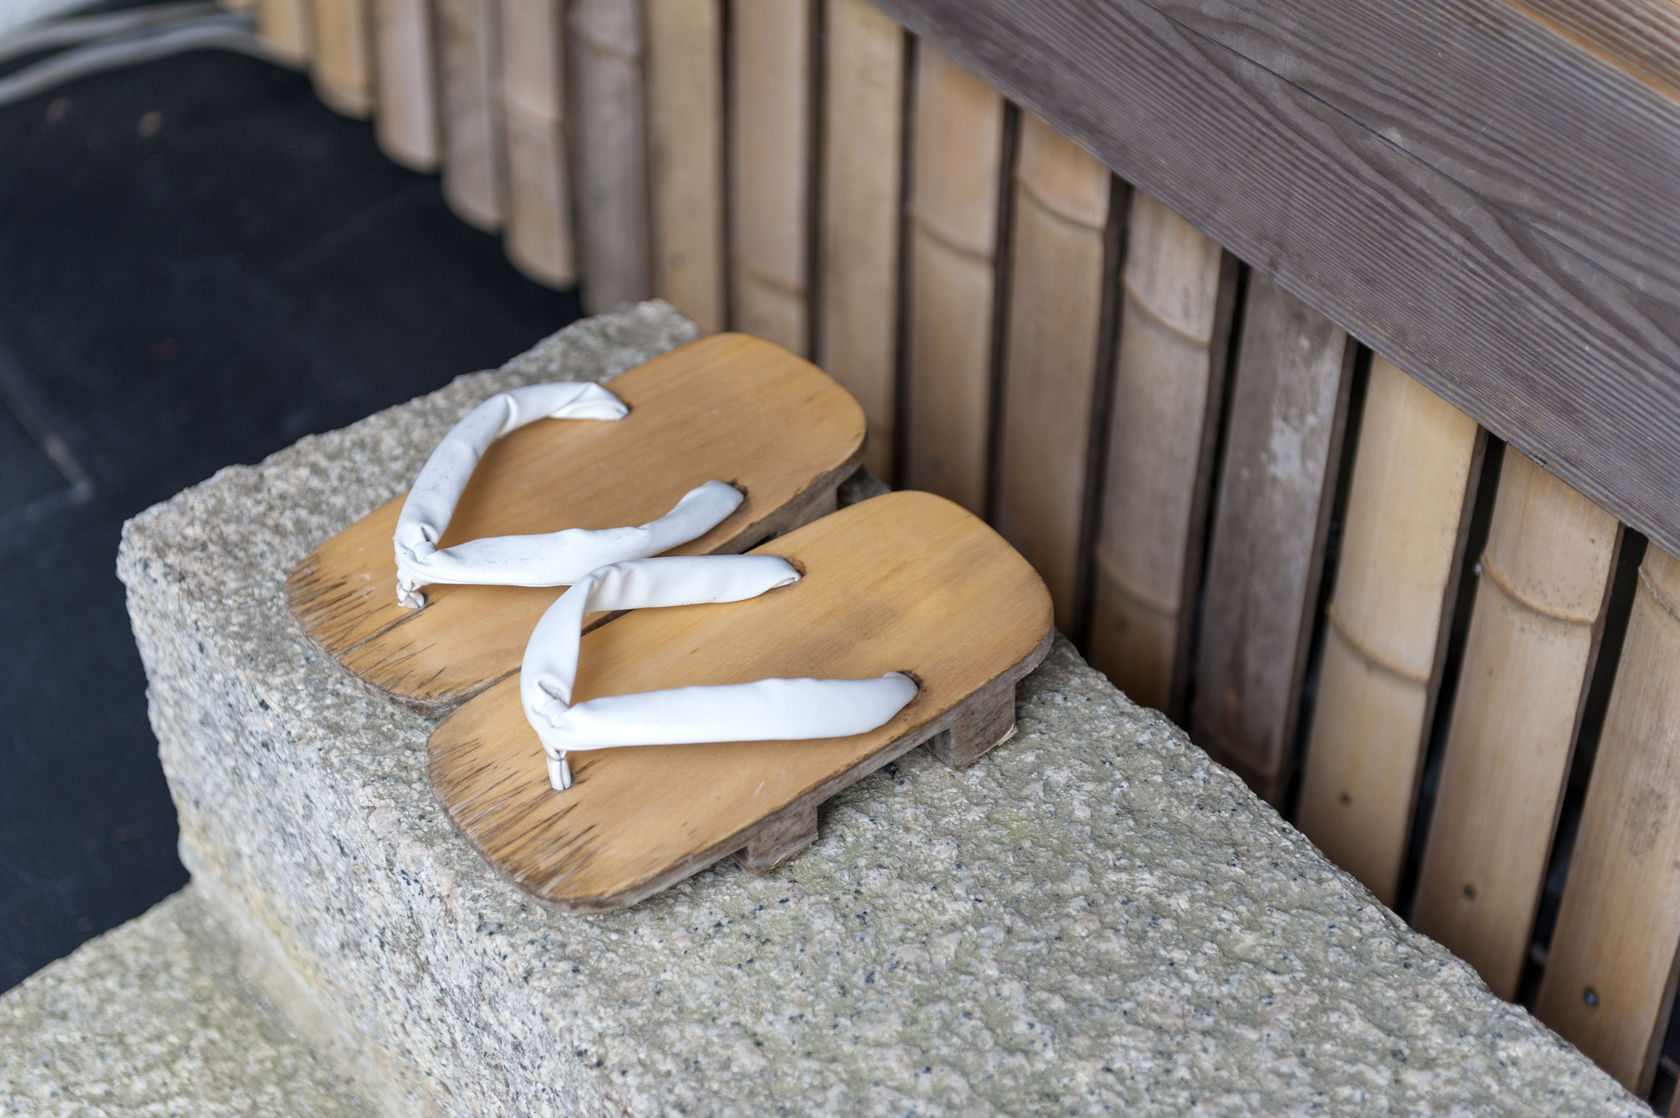 Vội mấy người Nhật cũng không bao giờ quên cởi giày trước khi bước vào nhà, lý do giúp bạn hiểu vì sao tuổi thọ của họ luôn "vô địch" thế giới - Ảnh 3.